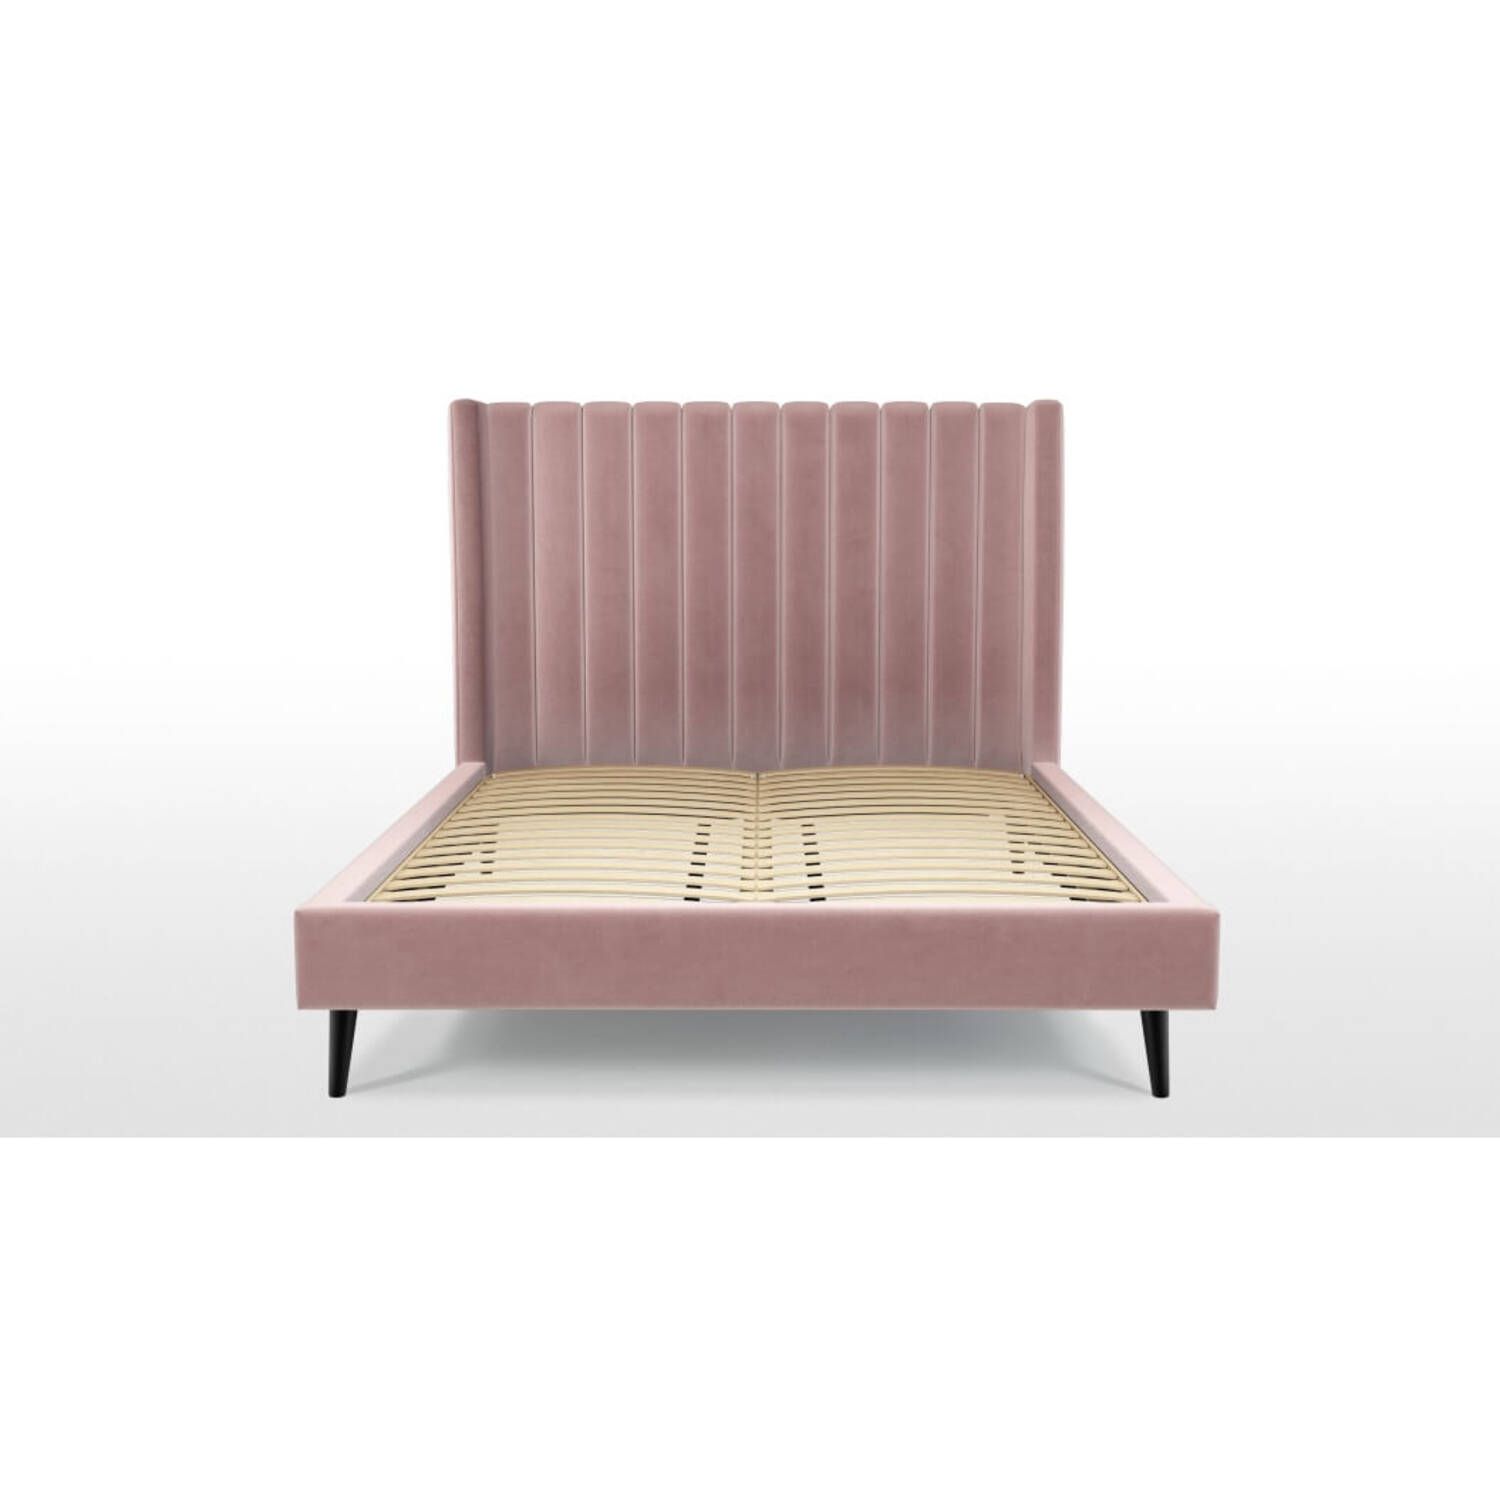 Кровать Cory на деревянных ножках, розовая